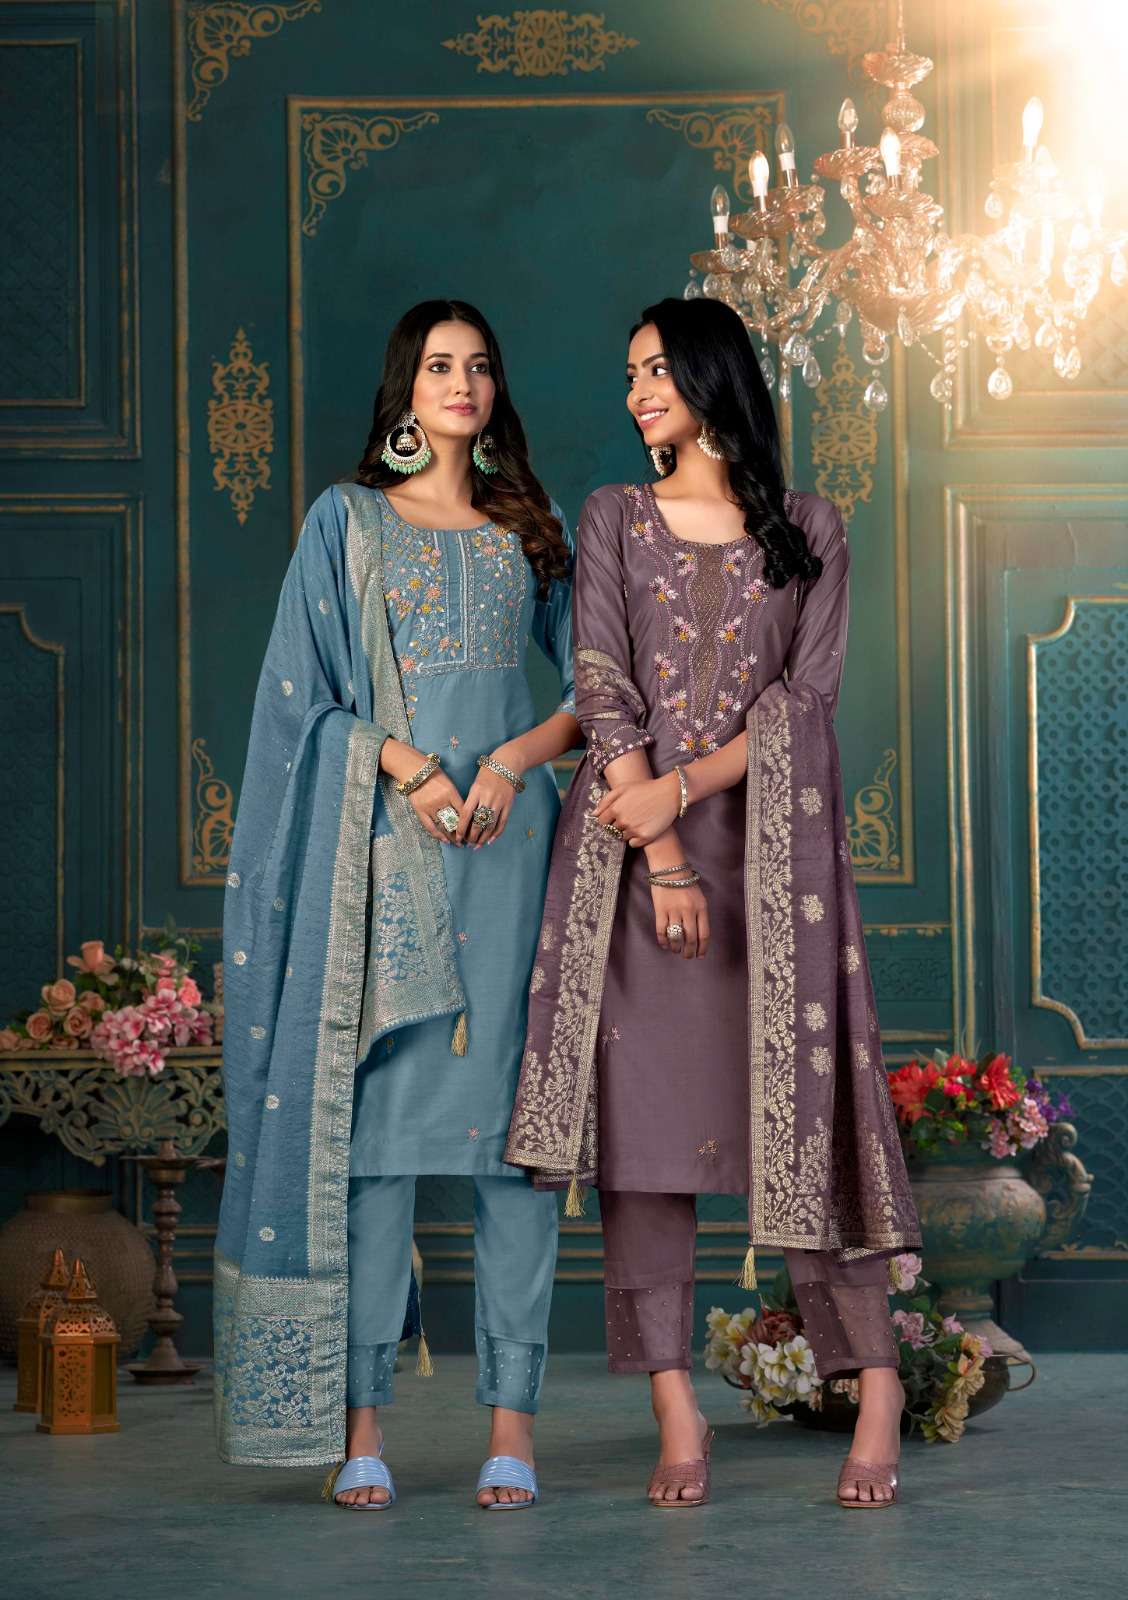 anju fabrics mayra vol-2 3151-3156 series silk designer party wear kurtis catalogue collection surat 